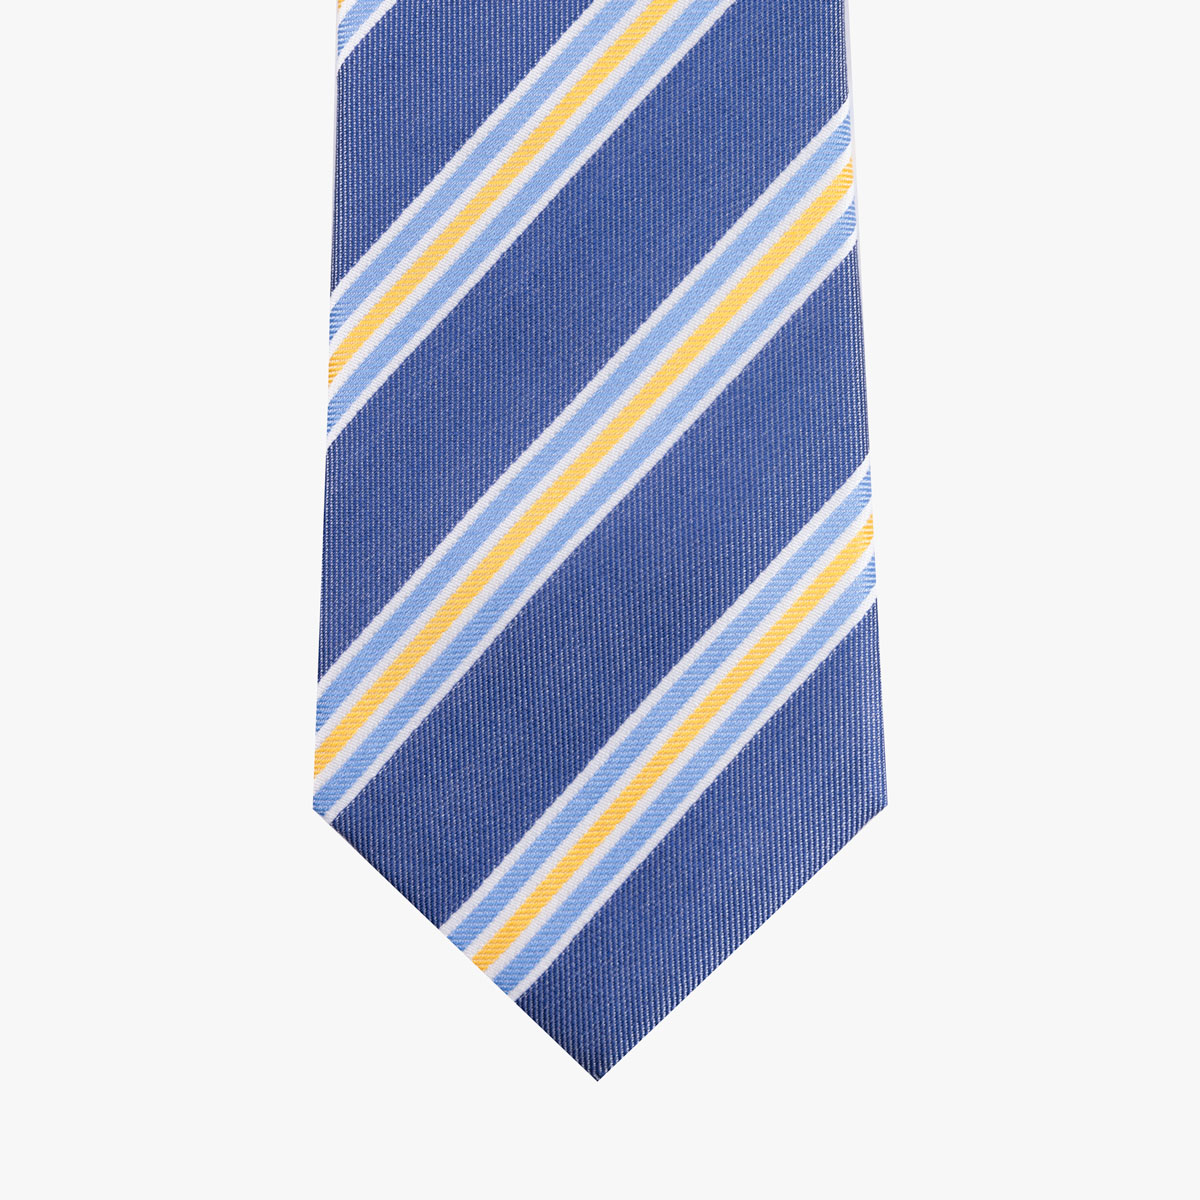 Krawatte aus Seide in dunkelblau mit hellen Streifen